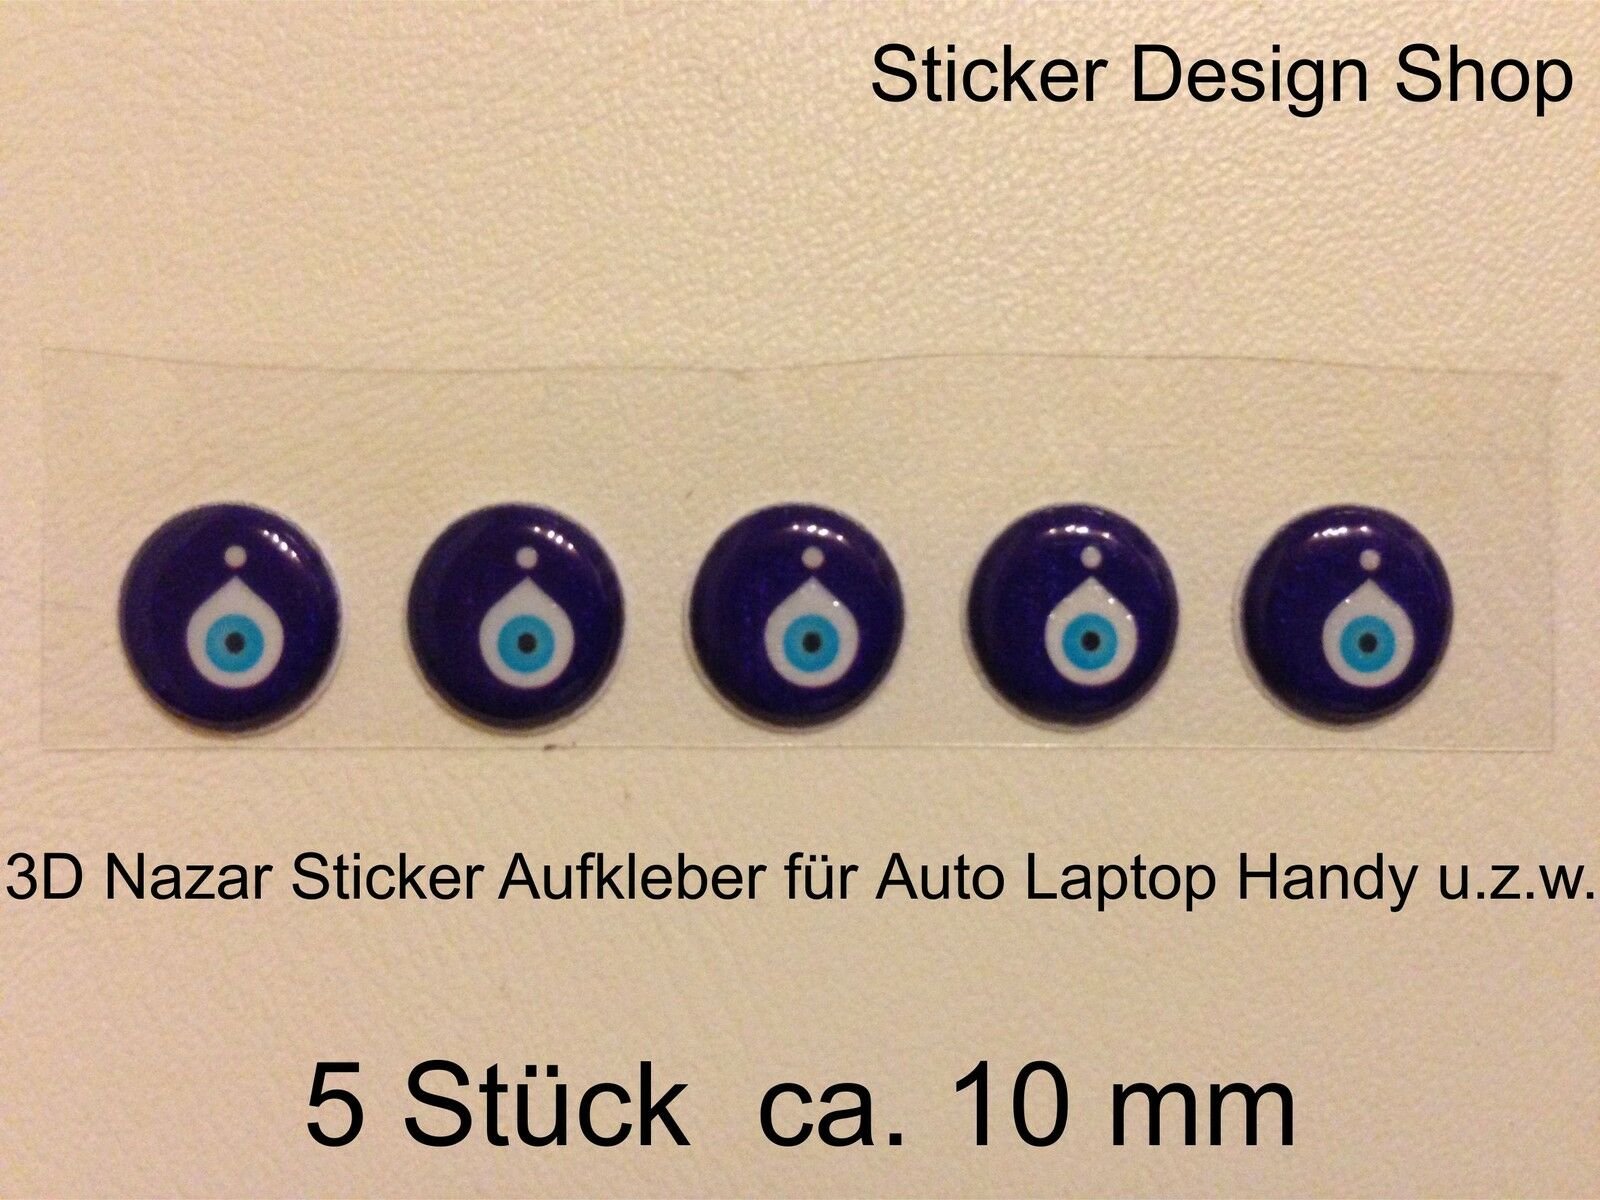 https://www.stickerdesignshop.de/wp-content/uploads/imported/7/3D-Nazar-Boncuk-Blaues-Auge-Evil-Eye-Sticker-Aufkleber-Auto-Laptop-Handy-Tuerkiye-390672961067.jpg